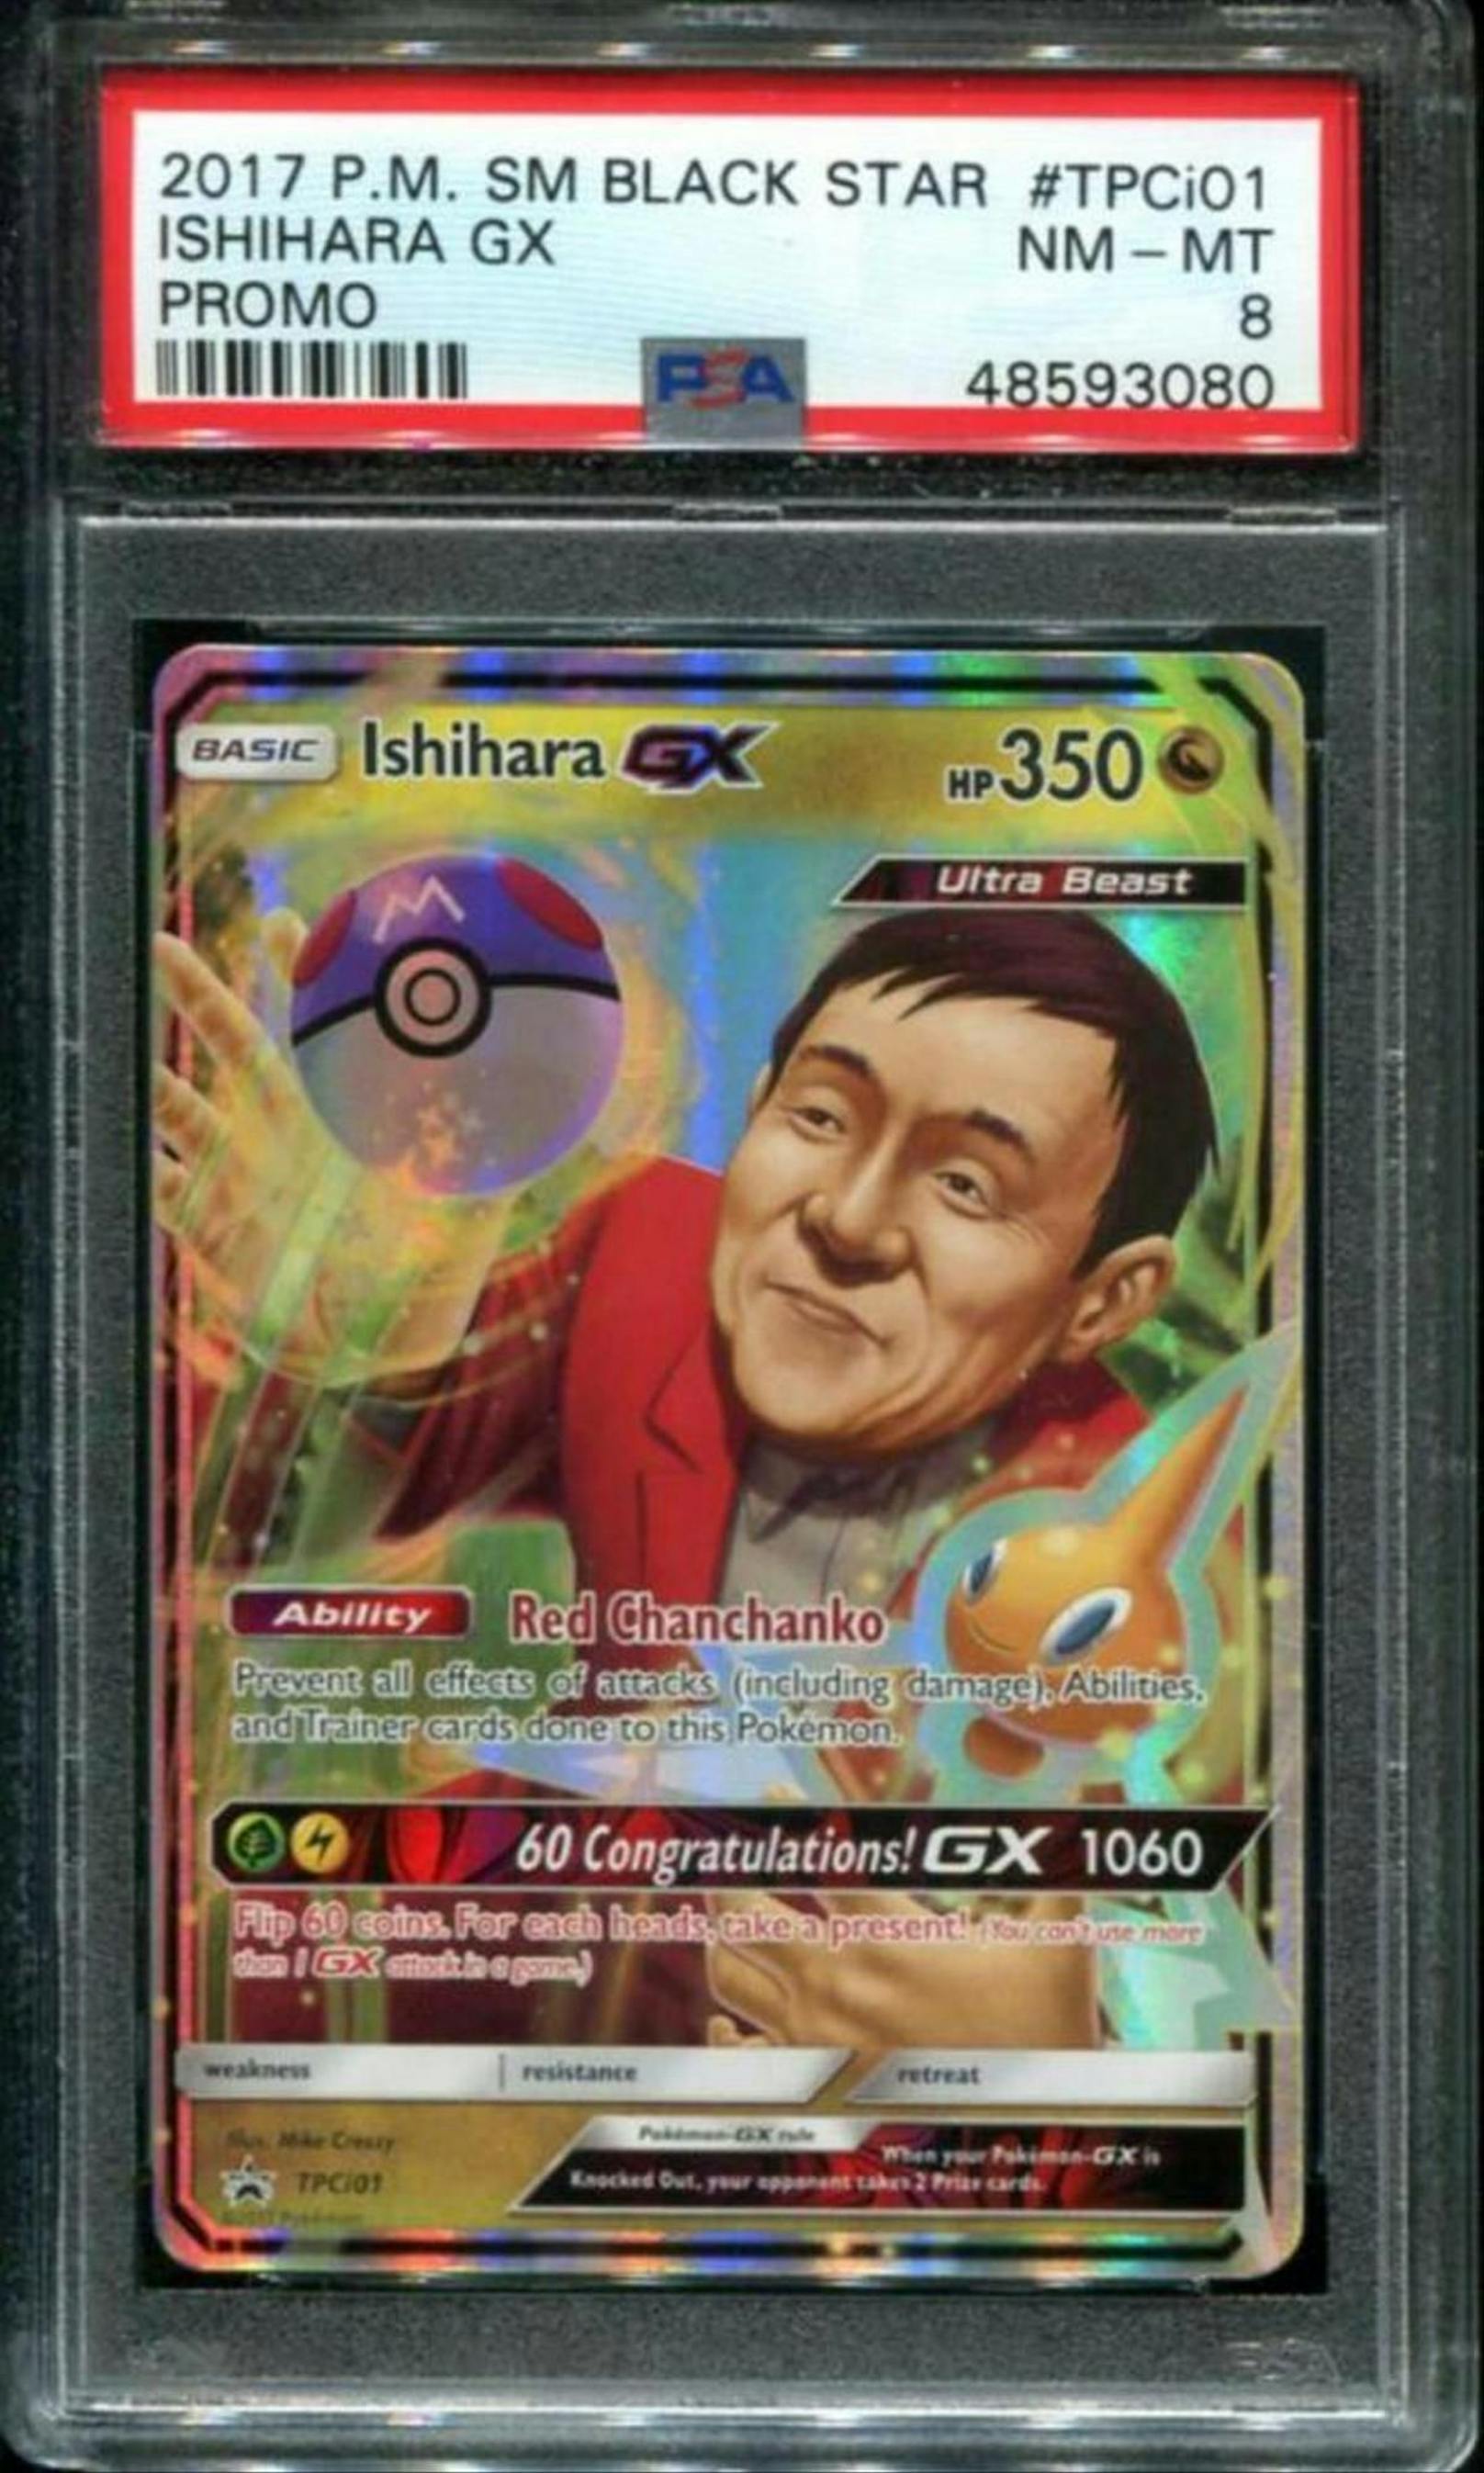 Knapp 60 dieser Karten wurden vom "Pokémon"-Präsidenten Tsunekazu Ishihara zu seinem 60. Geburtstag an seine Mitarbeiter verteilt. Letztes Jahr wurde eine davon für 50.500 Dollar auf Ebay verkauft.